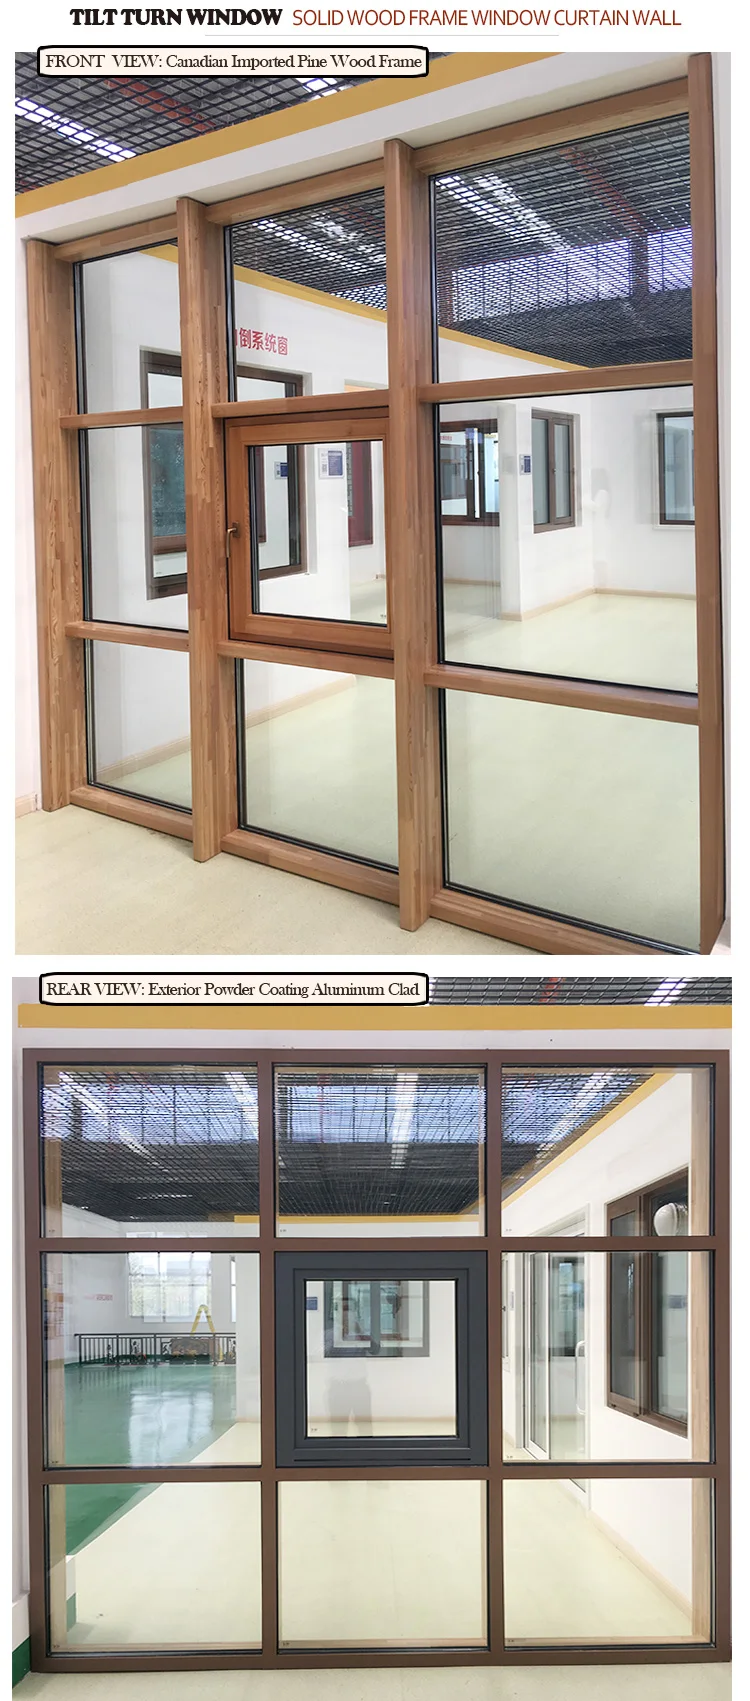 Good Supplier floor to ceiling glass windows cost door window replacement kit pane